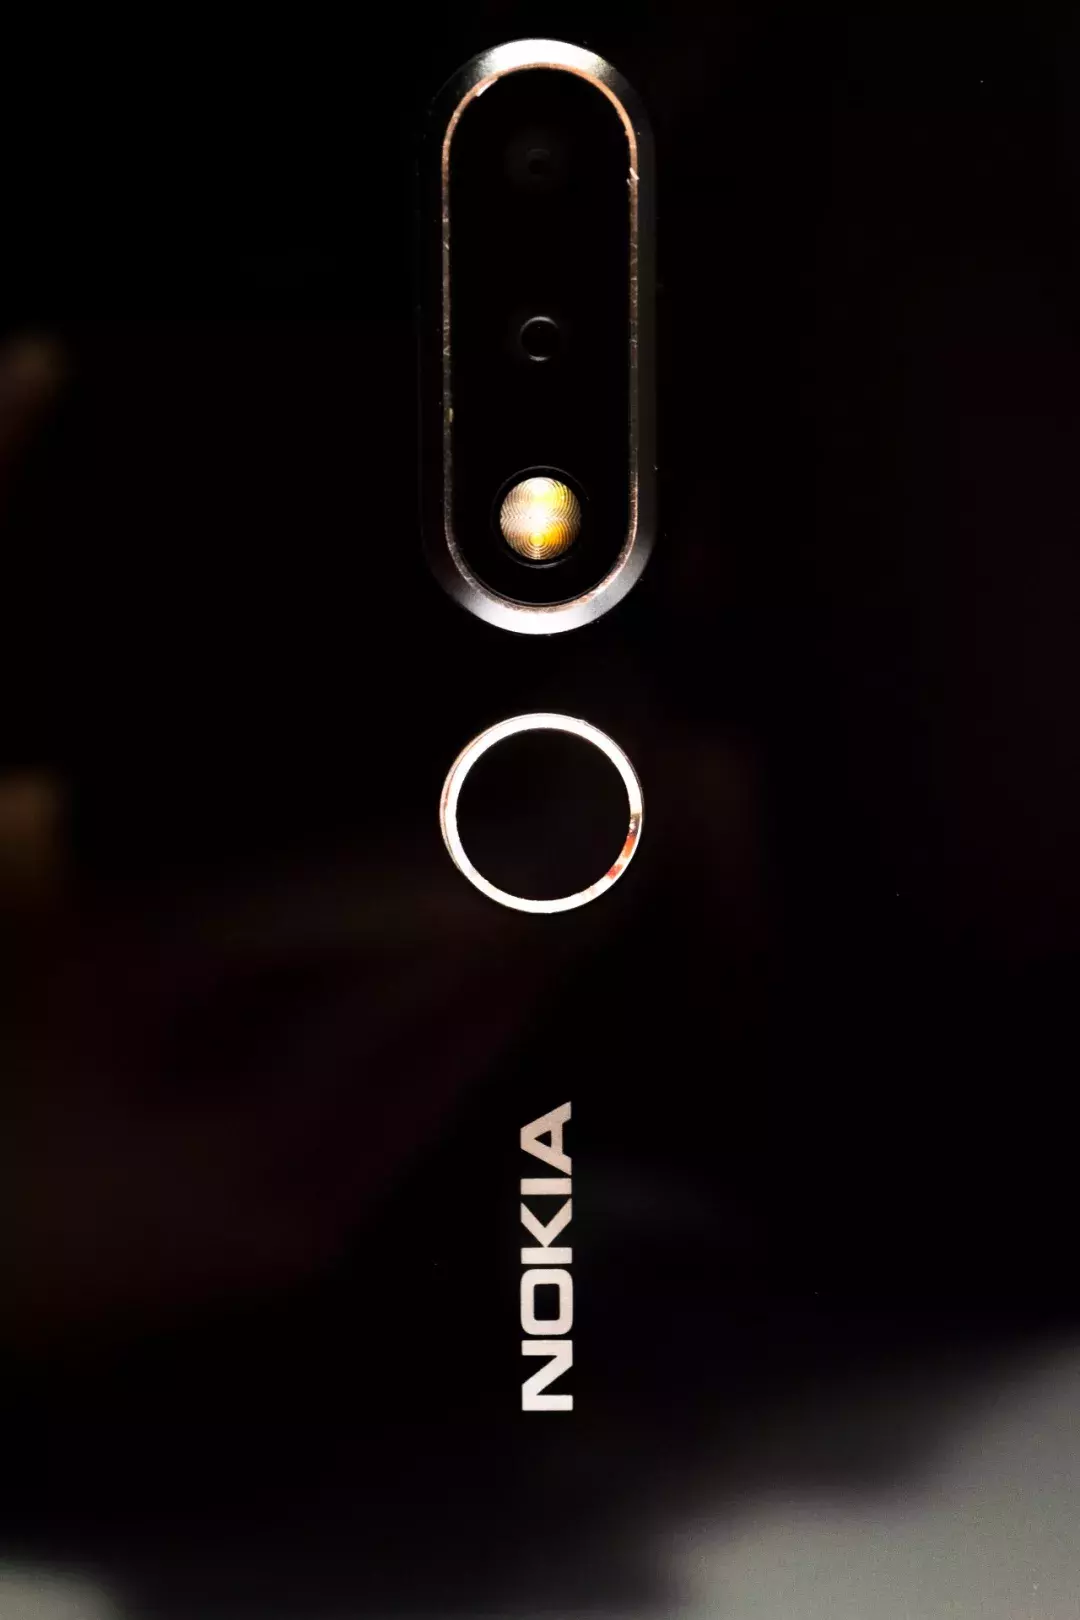 Nokia X6：“不用想就敢买”的千元刘海屏手机